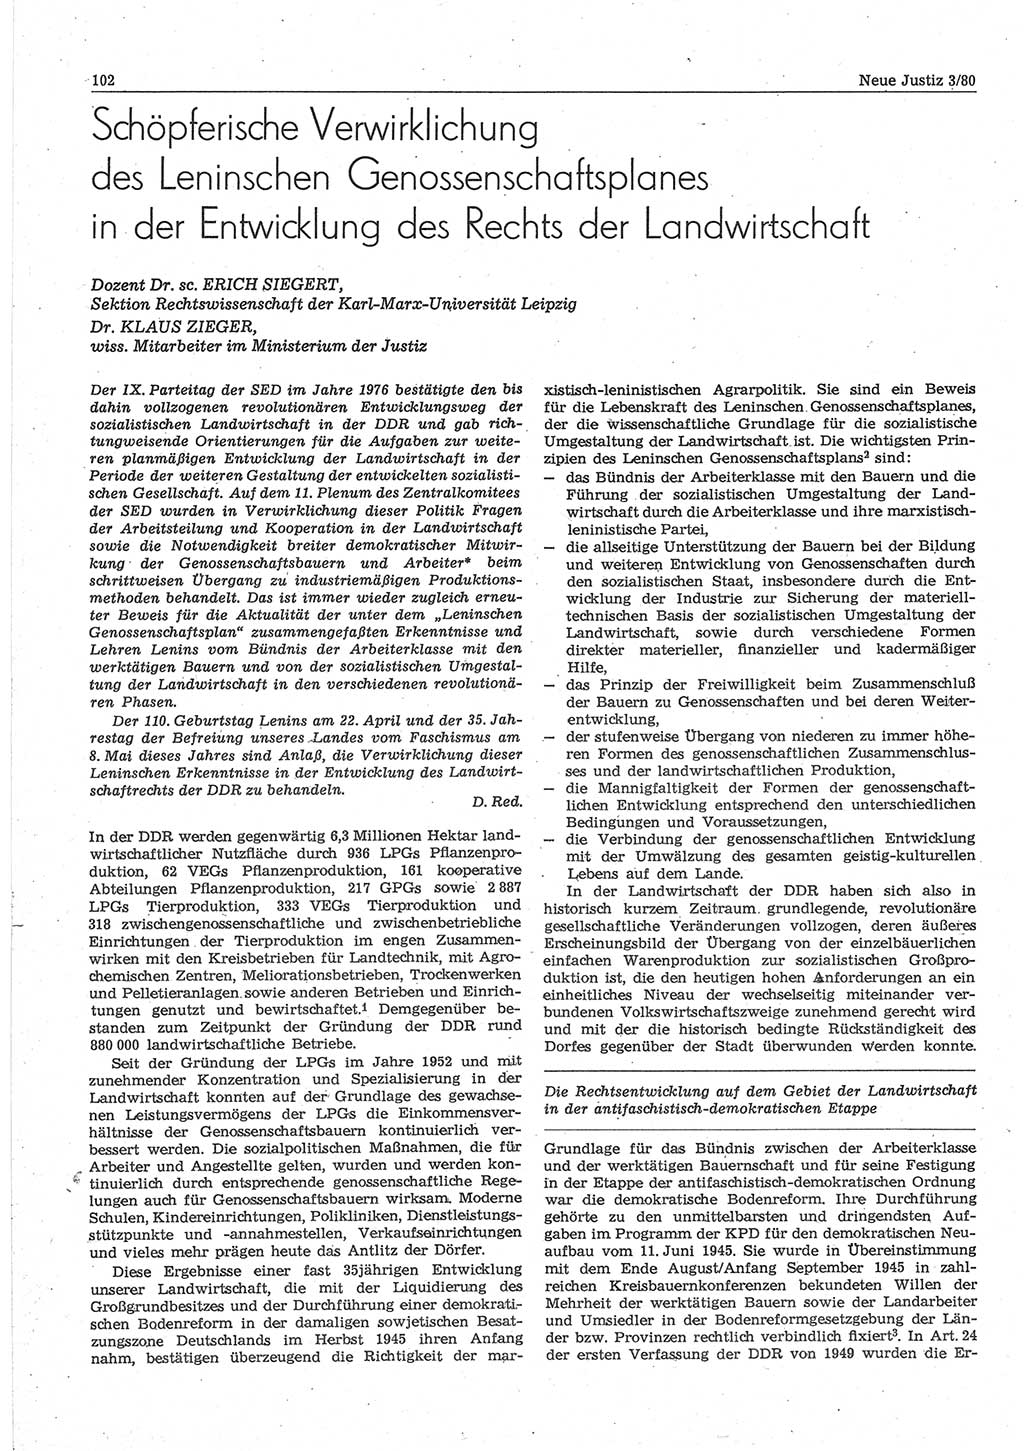 Neue Justiz (NJ), Zeitschrift für sozialistisches Recht und Gesetzlichkeit [Deutsche Demokratische Republik (DDR)], 34. Jahrgang 1980, Seite 102 (NJ DDR 1980, S. 102)